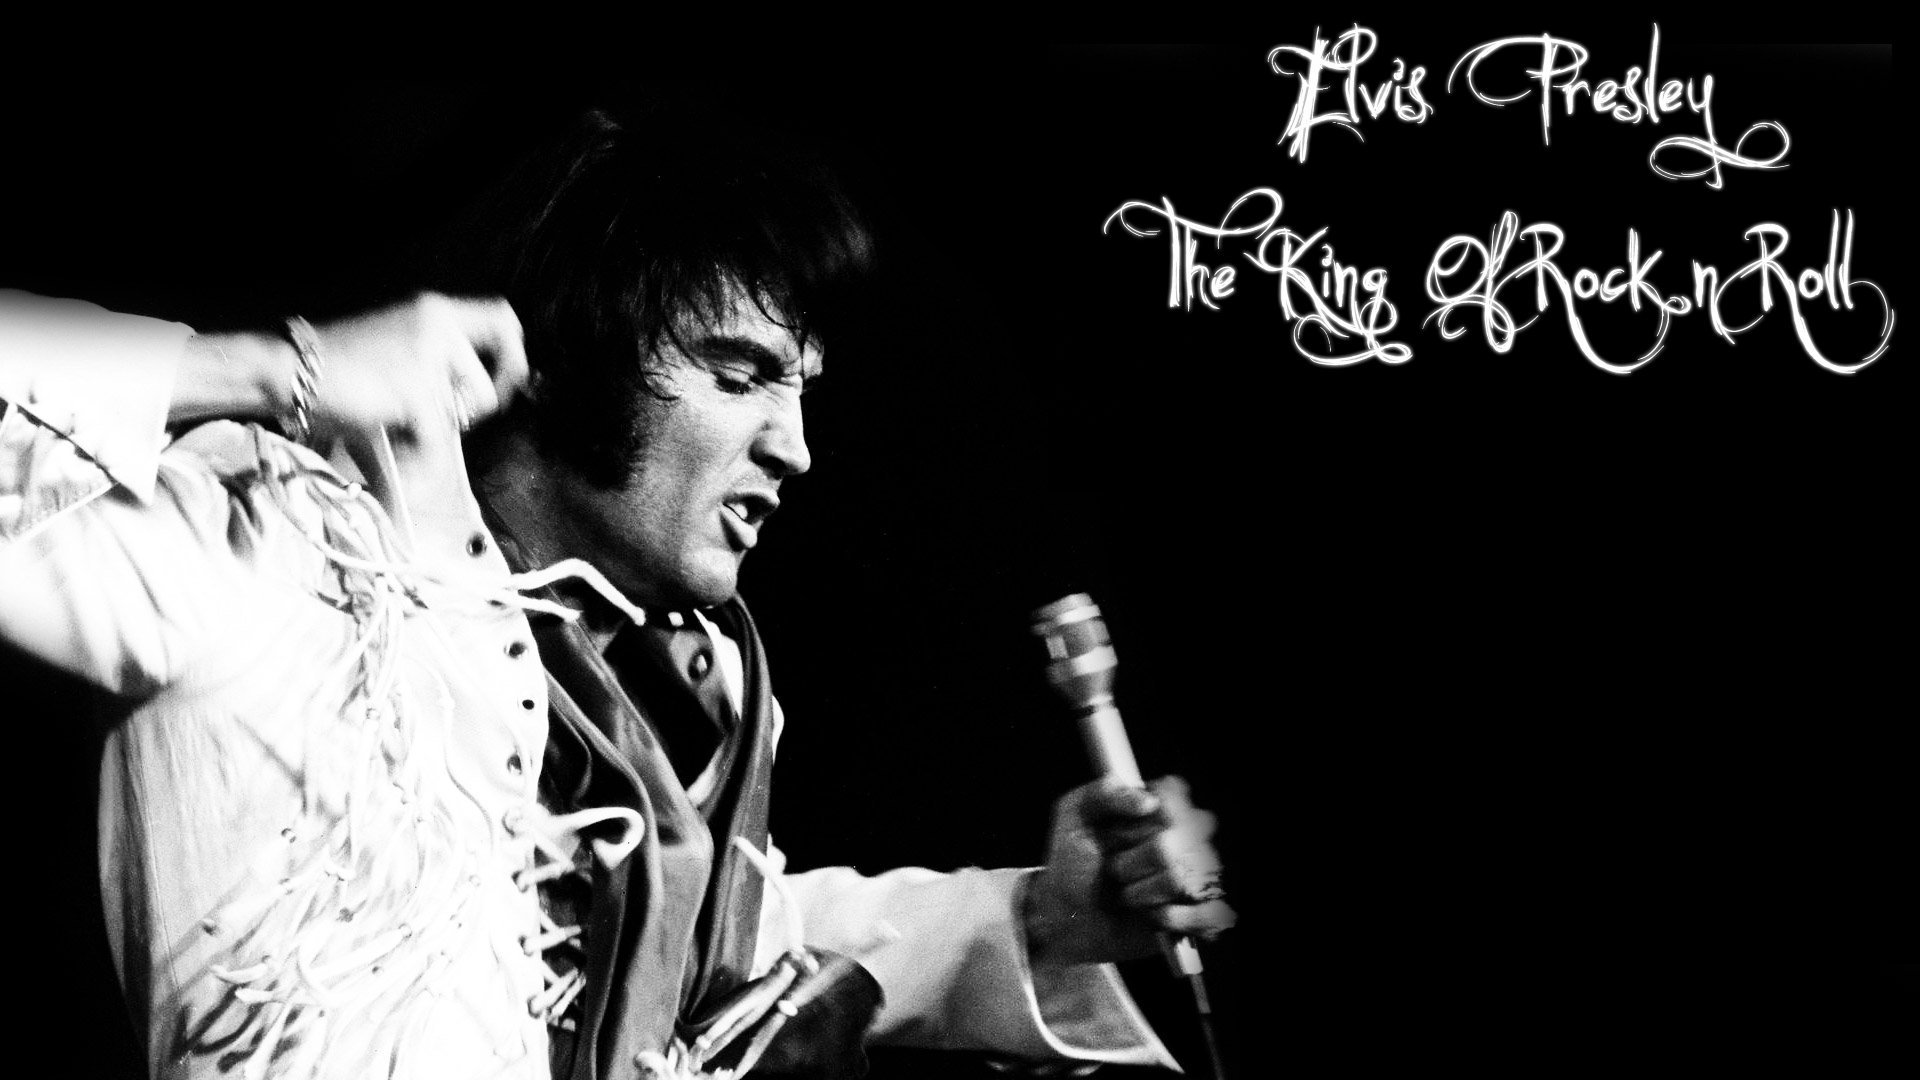 Elvis Presley Wallpapers